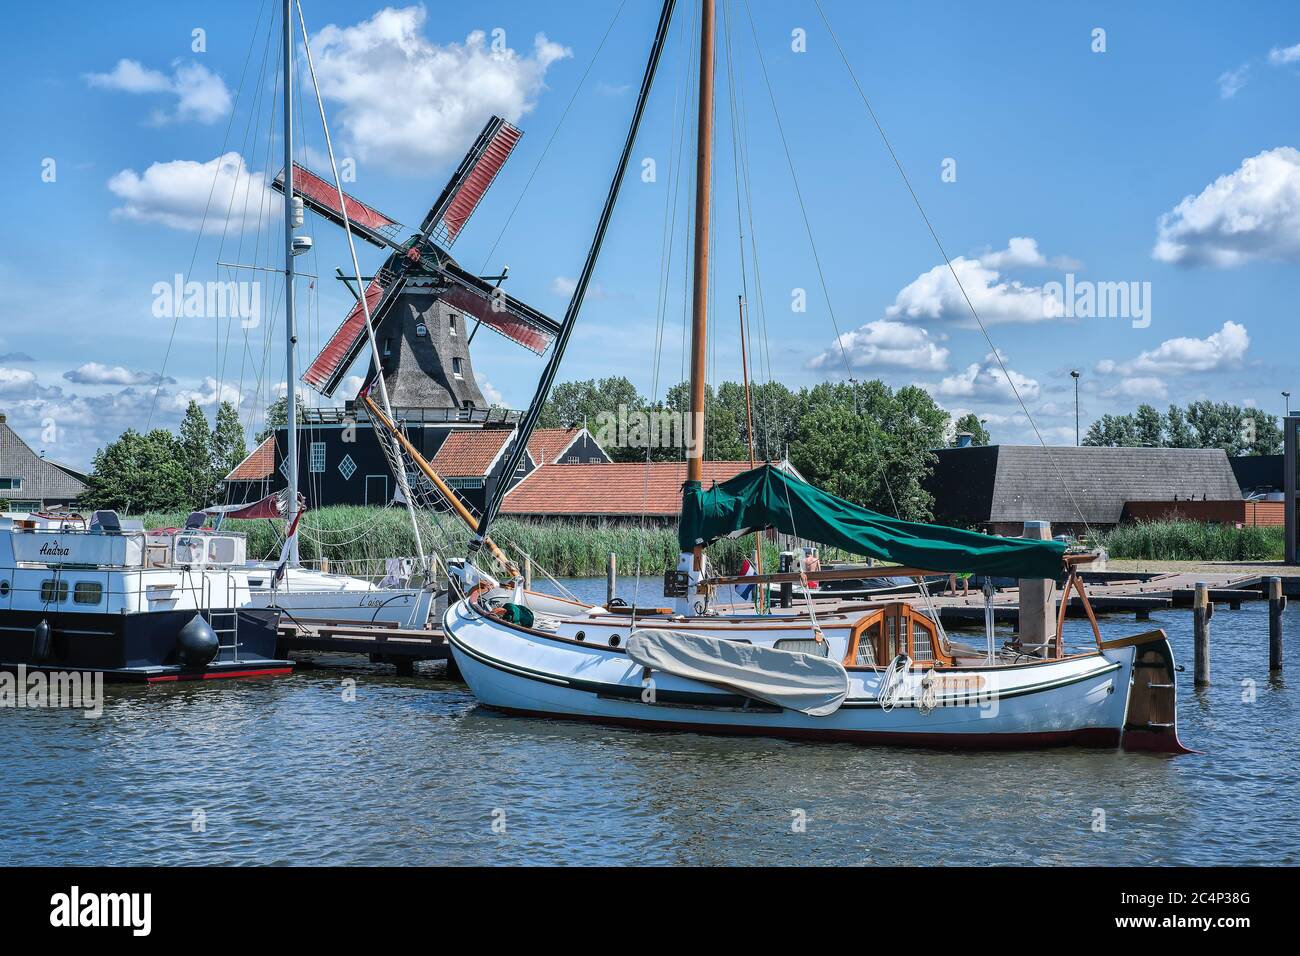 Europa, Paesi Bassi - Tour attraverso i canali di Friesland, un molo con una barca a vela, sullo sfondo un mulino a vento tradizionale Foto Stock